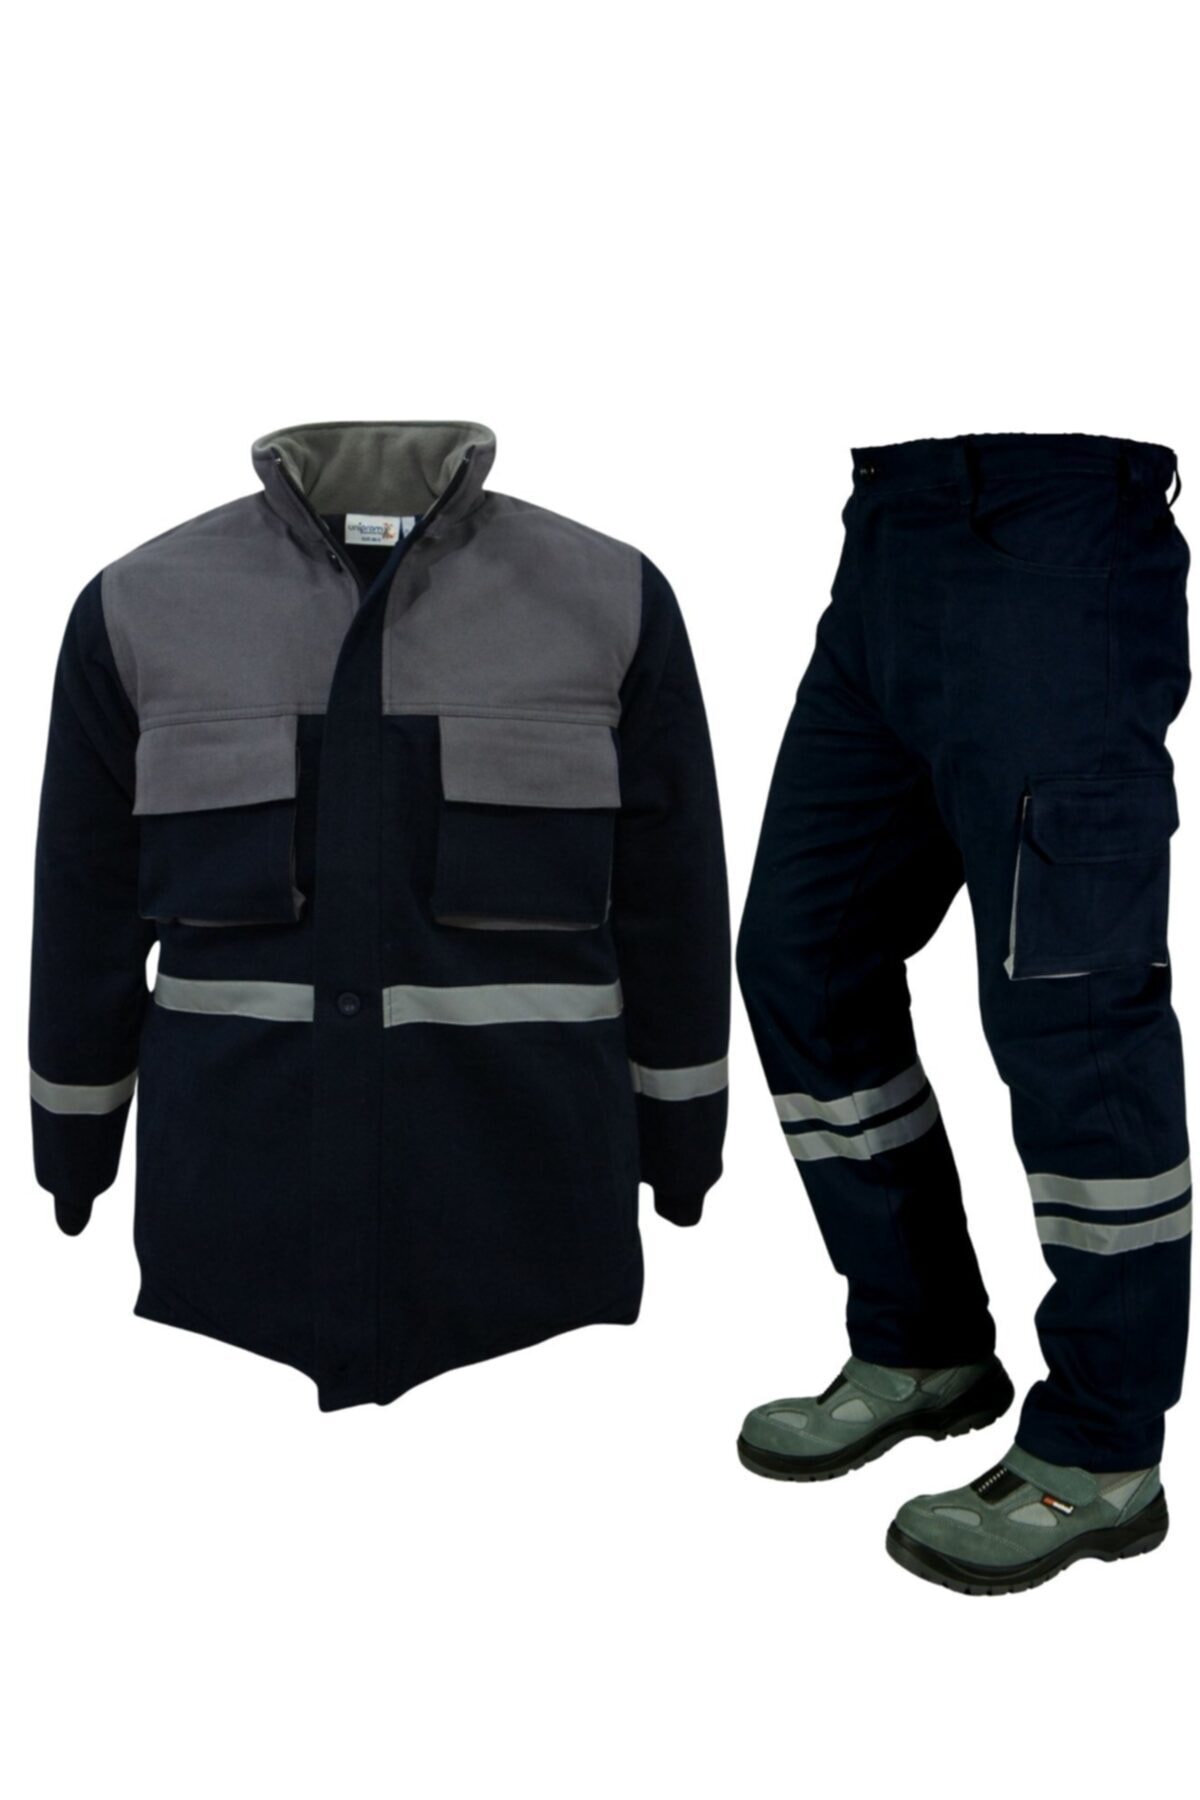 Uniprom Kışlık Iş Pantolonu Ve Ceket Takımı Lacivert Gri 2